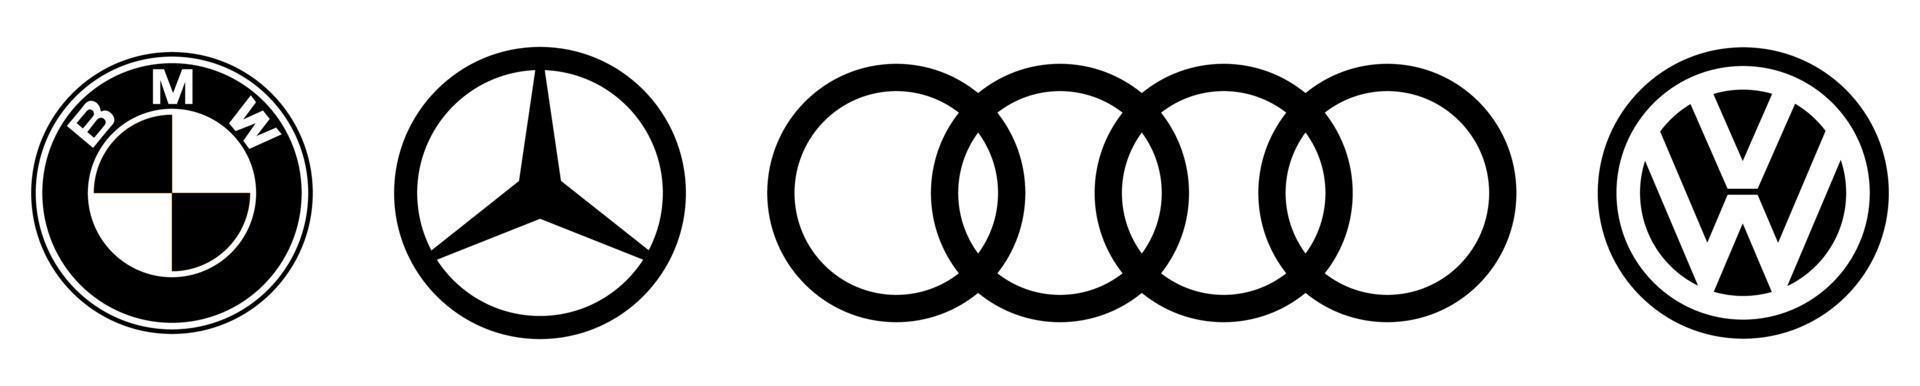 Logo der führenden deutschen Autohersteller vektor